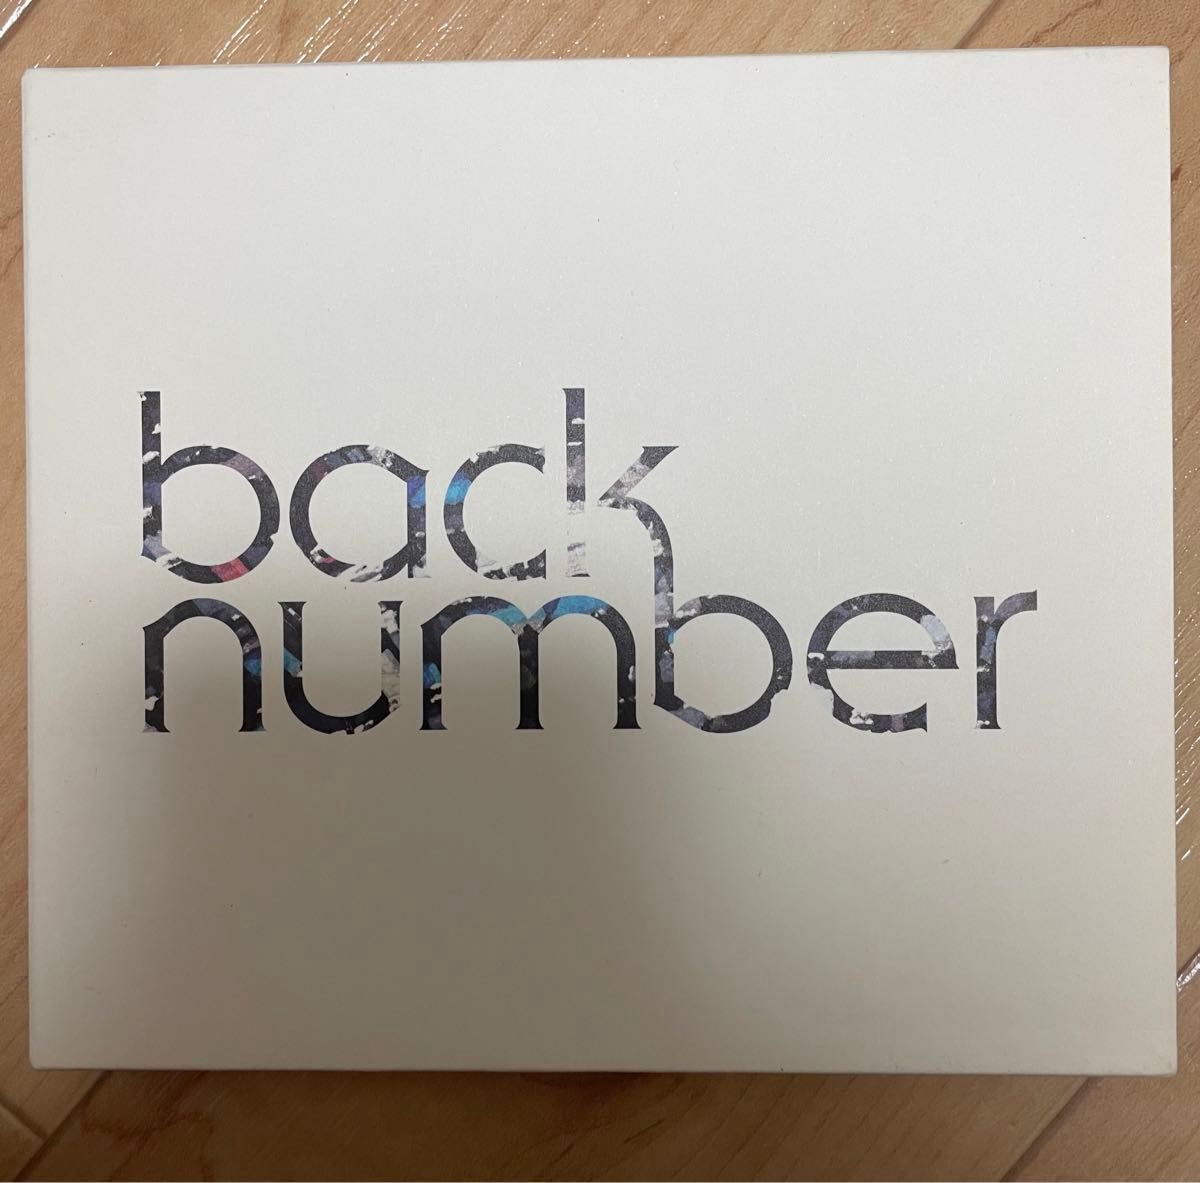 【アルバム+DVD】back number ラブストーリー　初回限定盤A